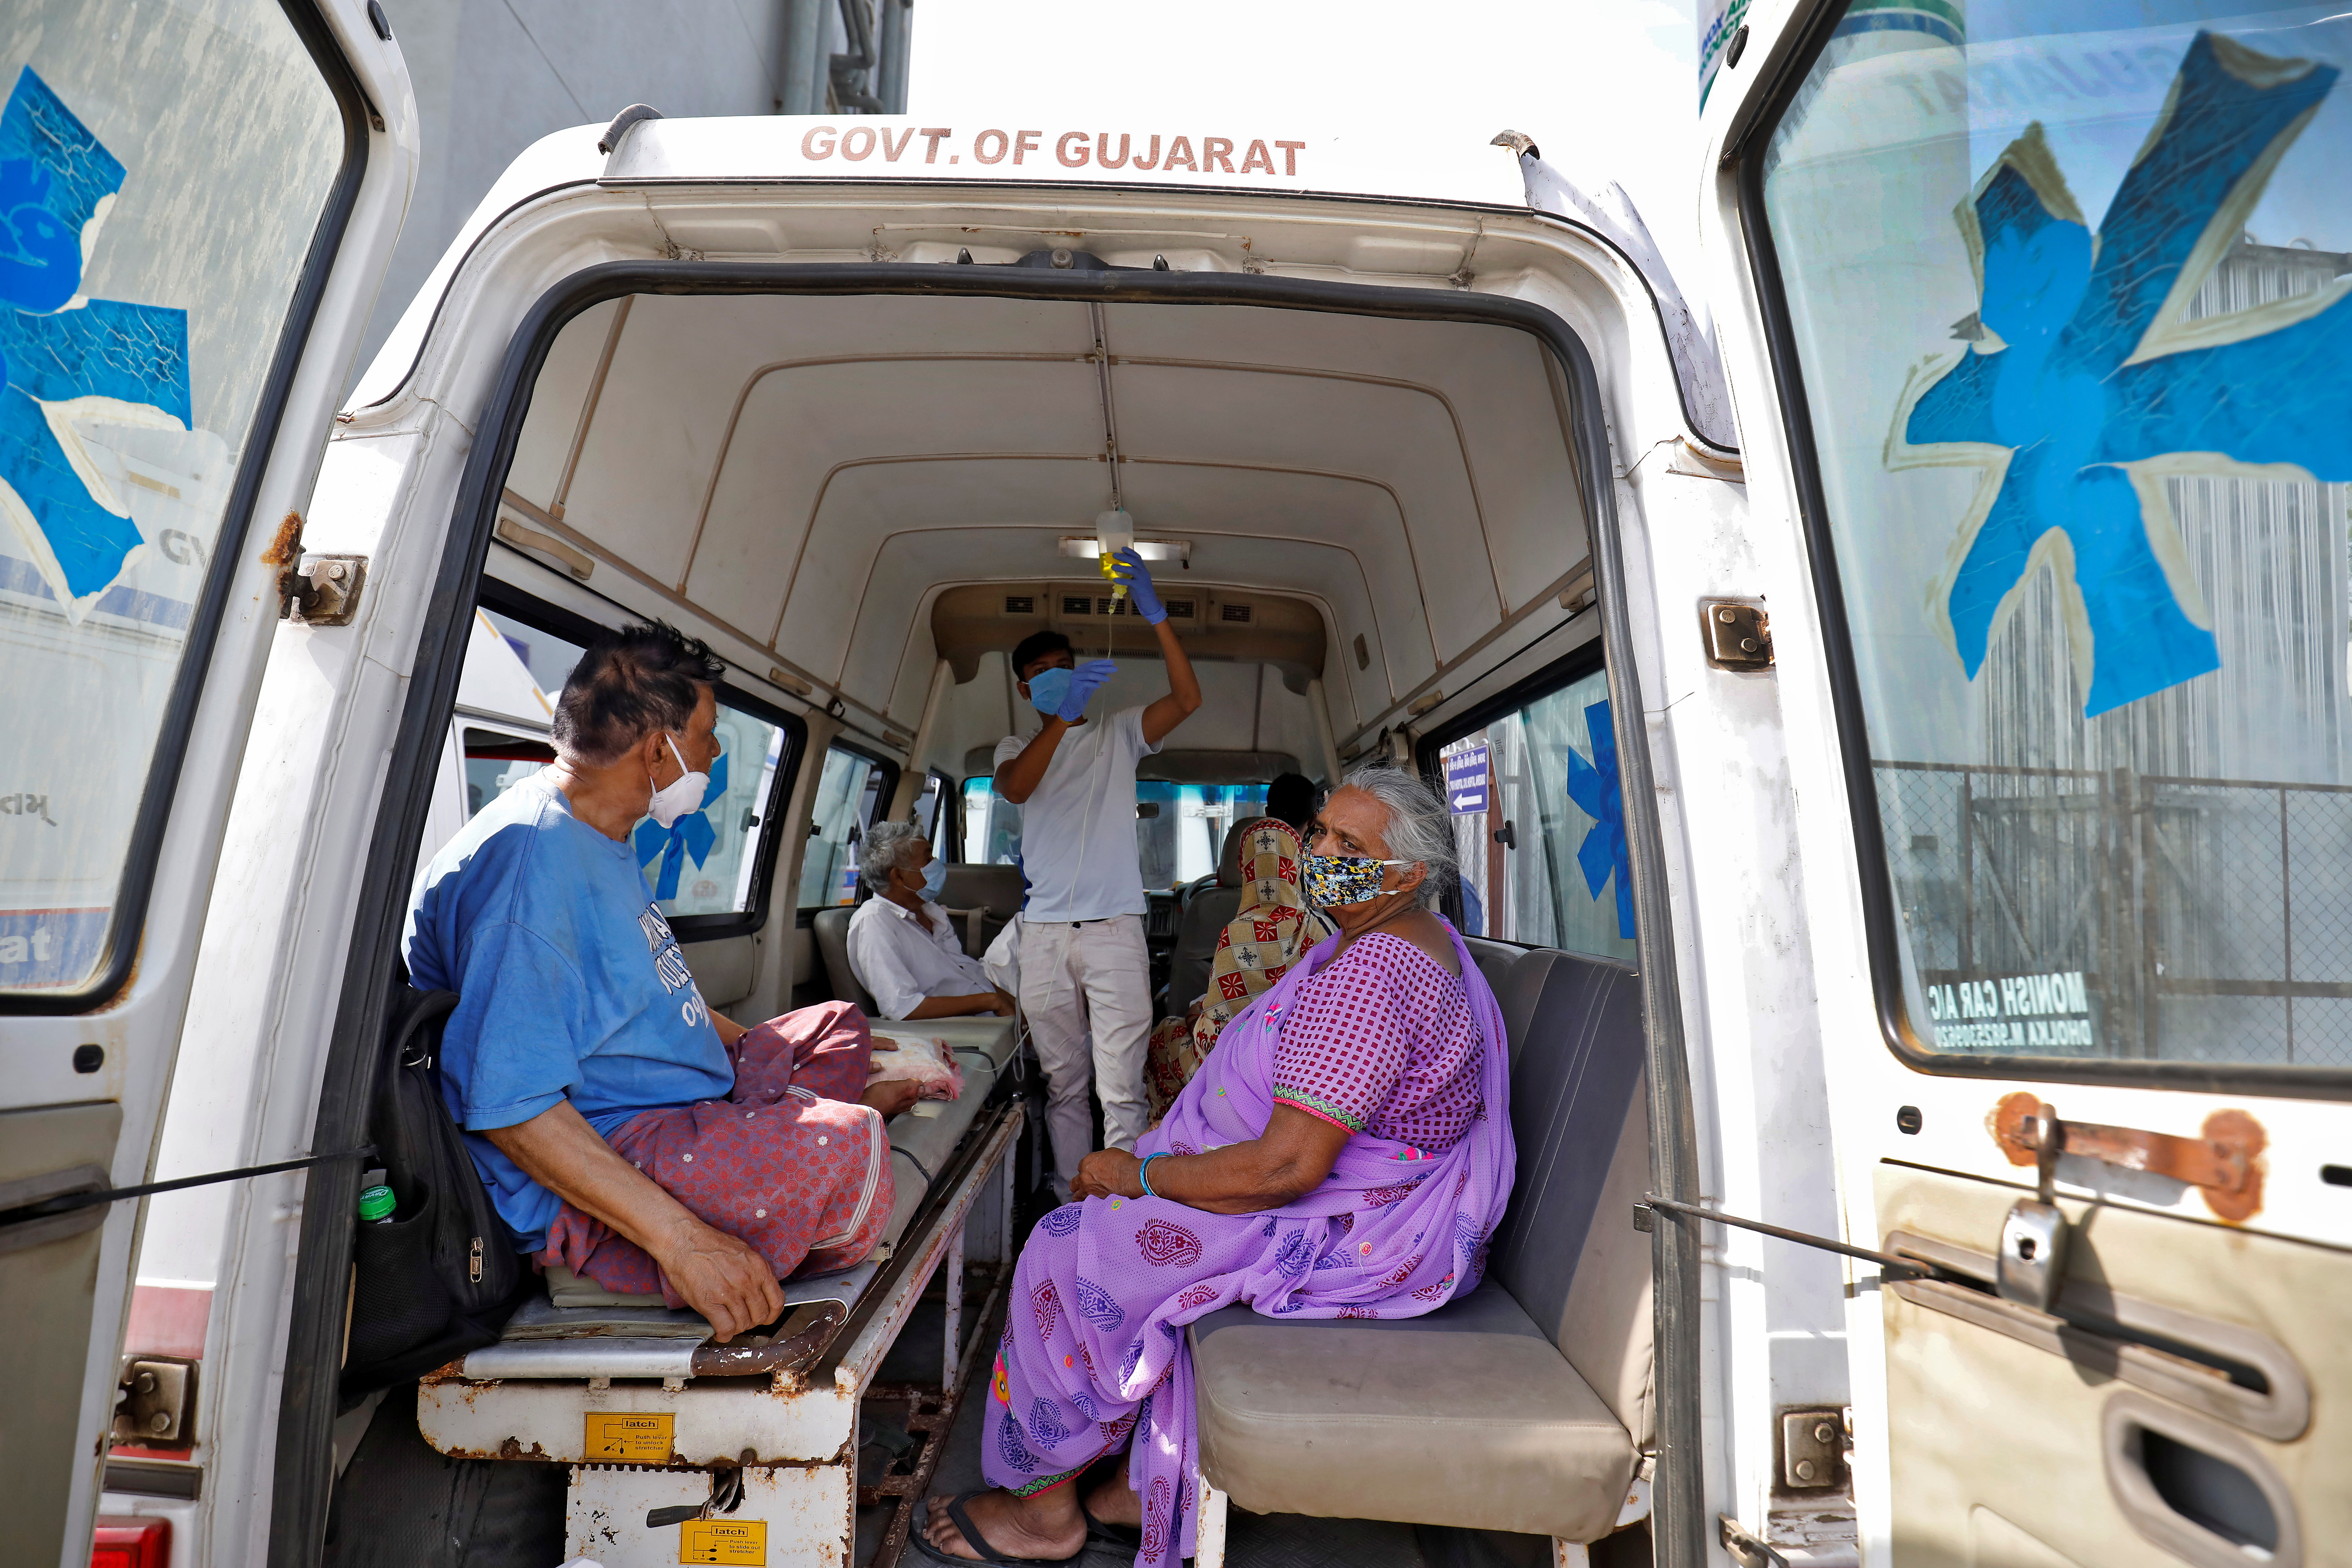 Pacientët janë parë brenda një ambulancë ndërsa presin të hyjnë në një spital COVID-19 për trajtim, mes përhapjes së sëmundjes së koronavirusit (COVID-19) në Ahmedabad, Indi, 22 Prill 2021. REUTERS / Amit Dave